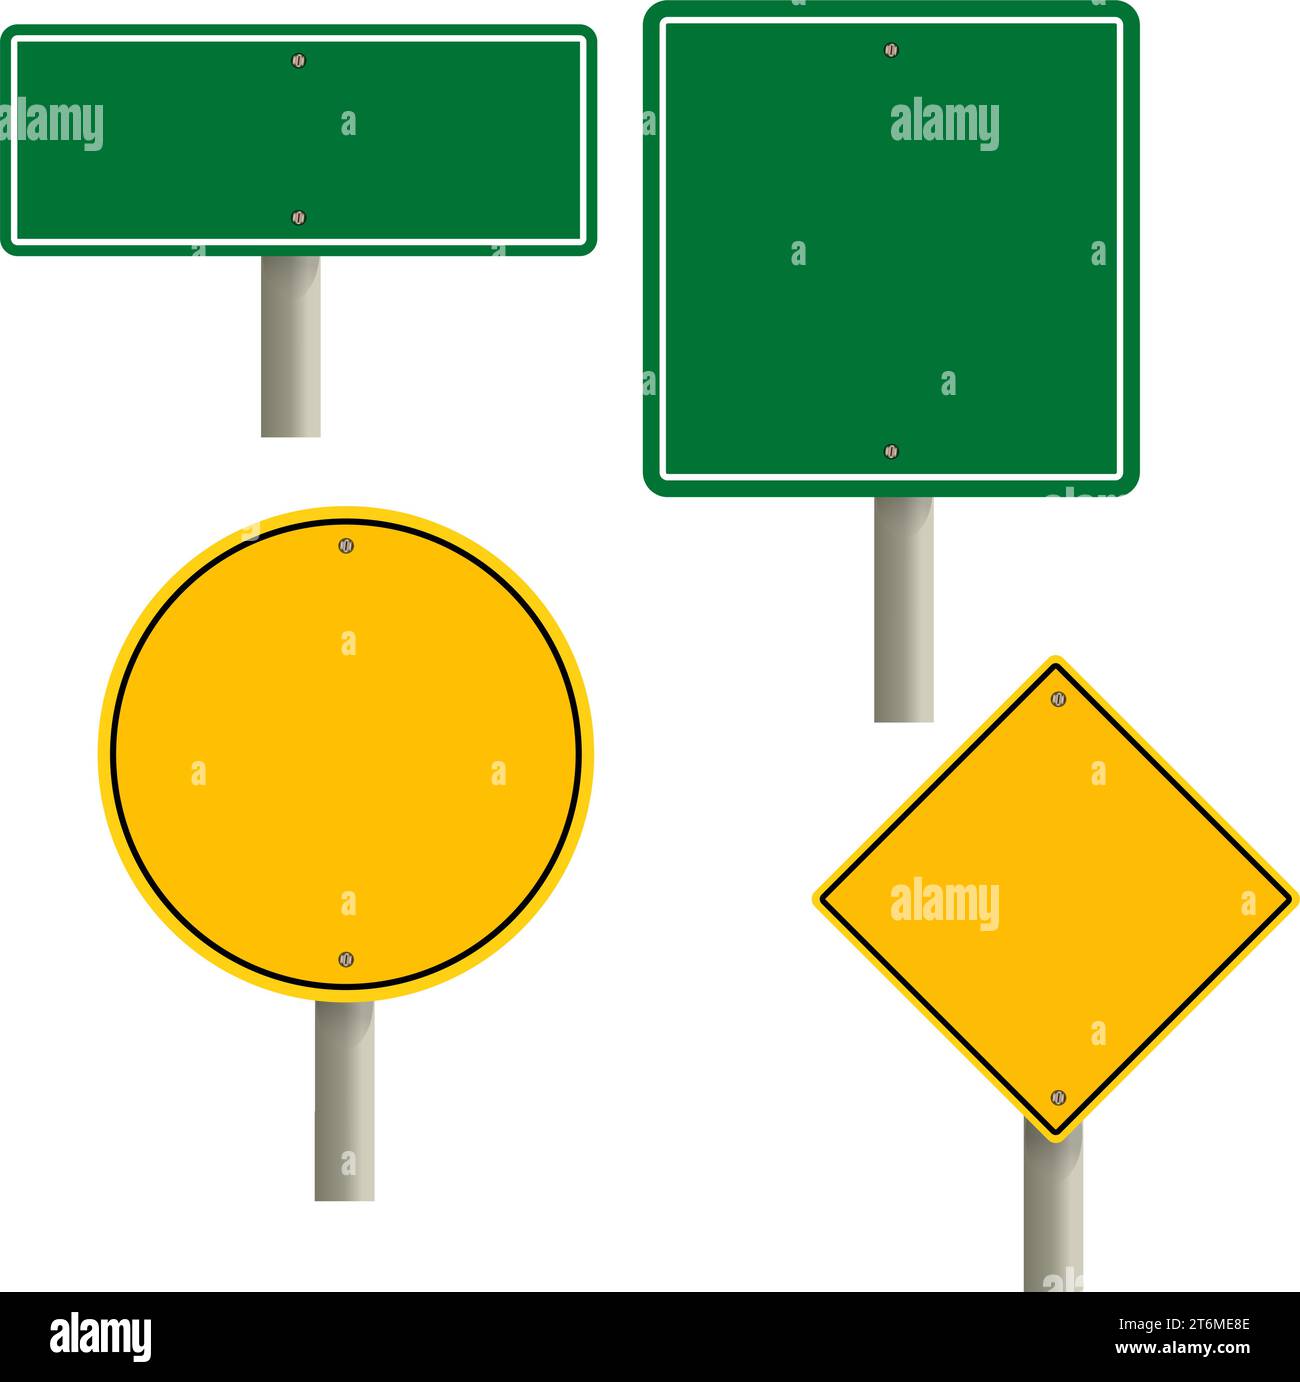 señal de carretera plantilla en blanco. La señal de tráfico establece la maqueta de la señal en blanco del tráfico. Señales de la autopista. punteros amarillos en la carretera, señales de control de tráfico. Ilustración del Vector